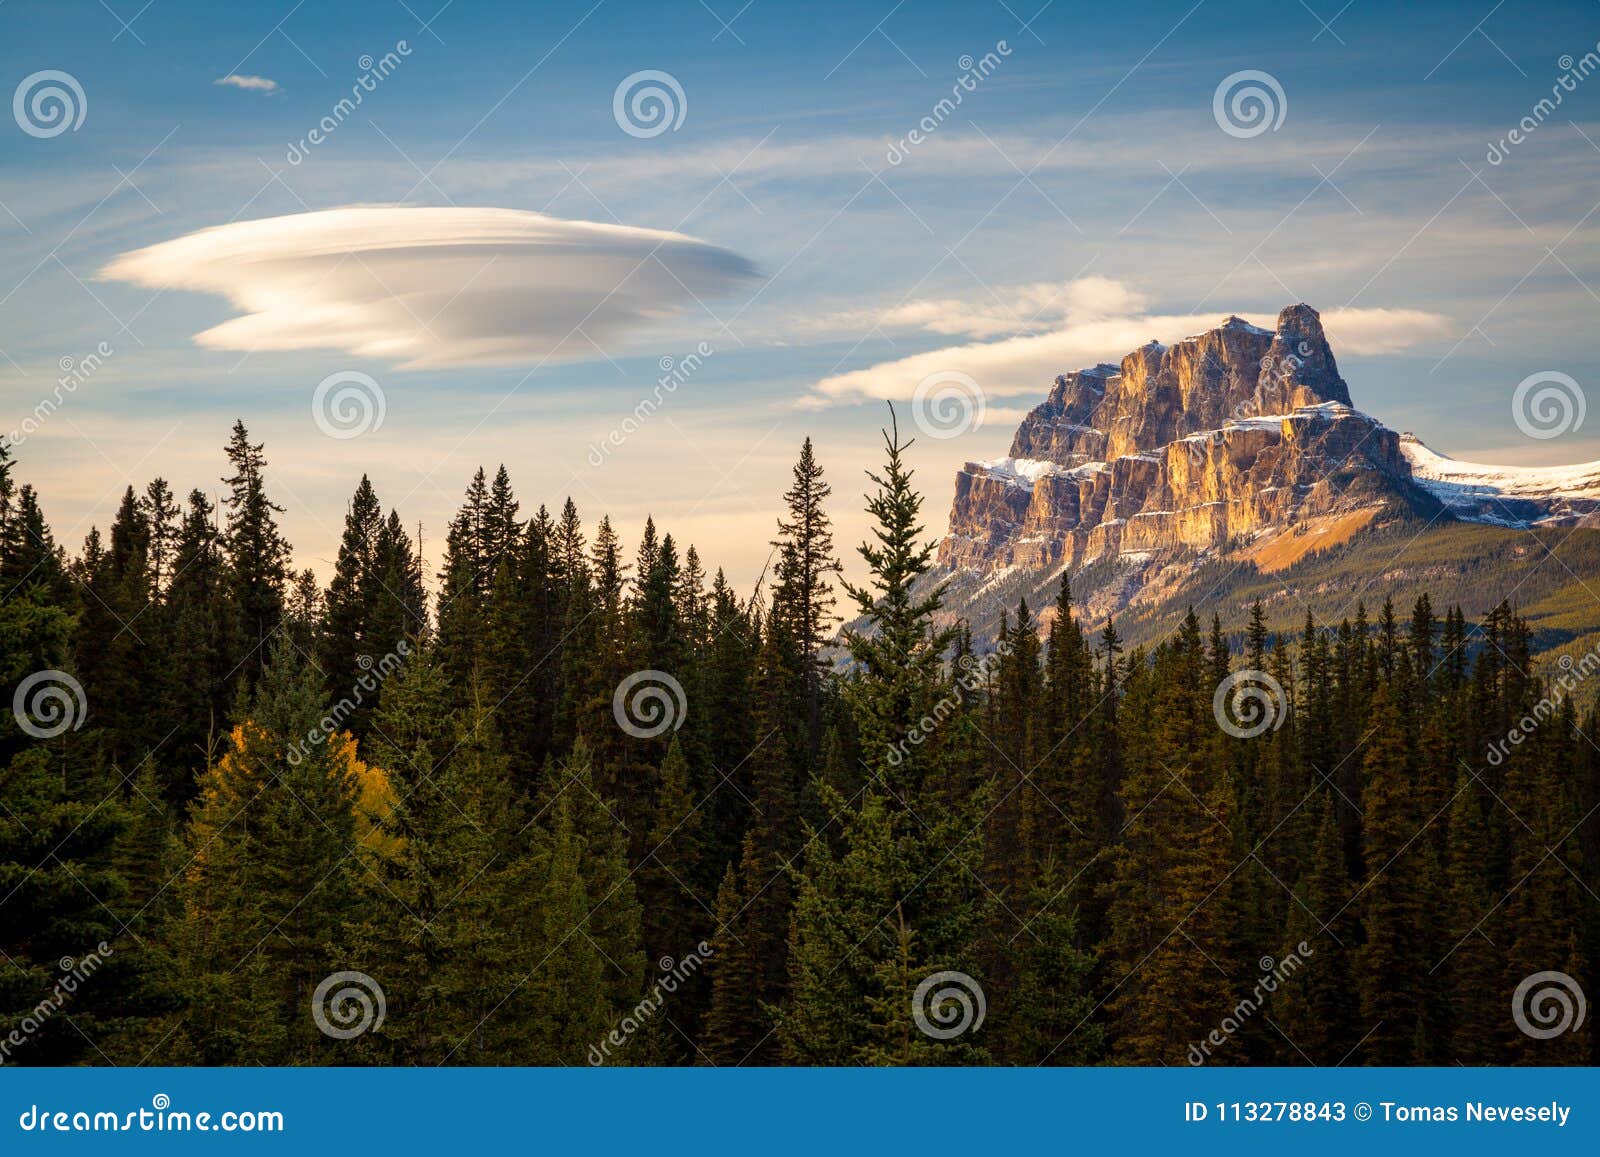 Retranchez-vous la montagne en parc national de Banff avec un spectacular lentic. Retranchez-vous la montagne en parc national de Banff, Canada avec un nuage lenticulaire spectaculaire